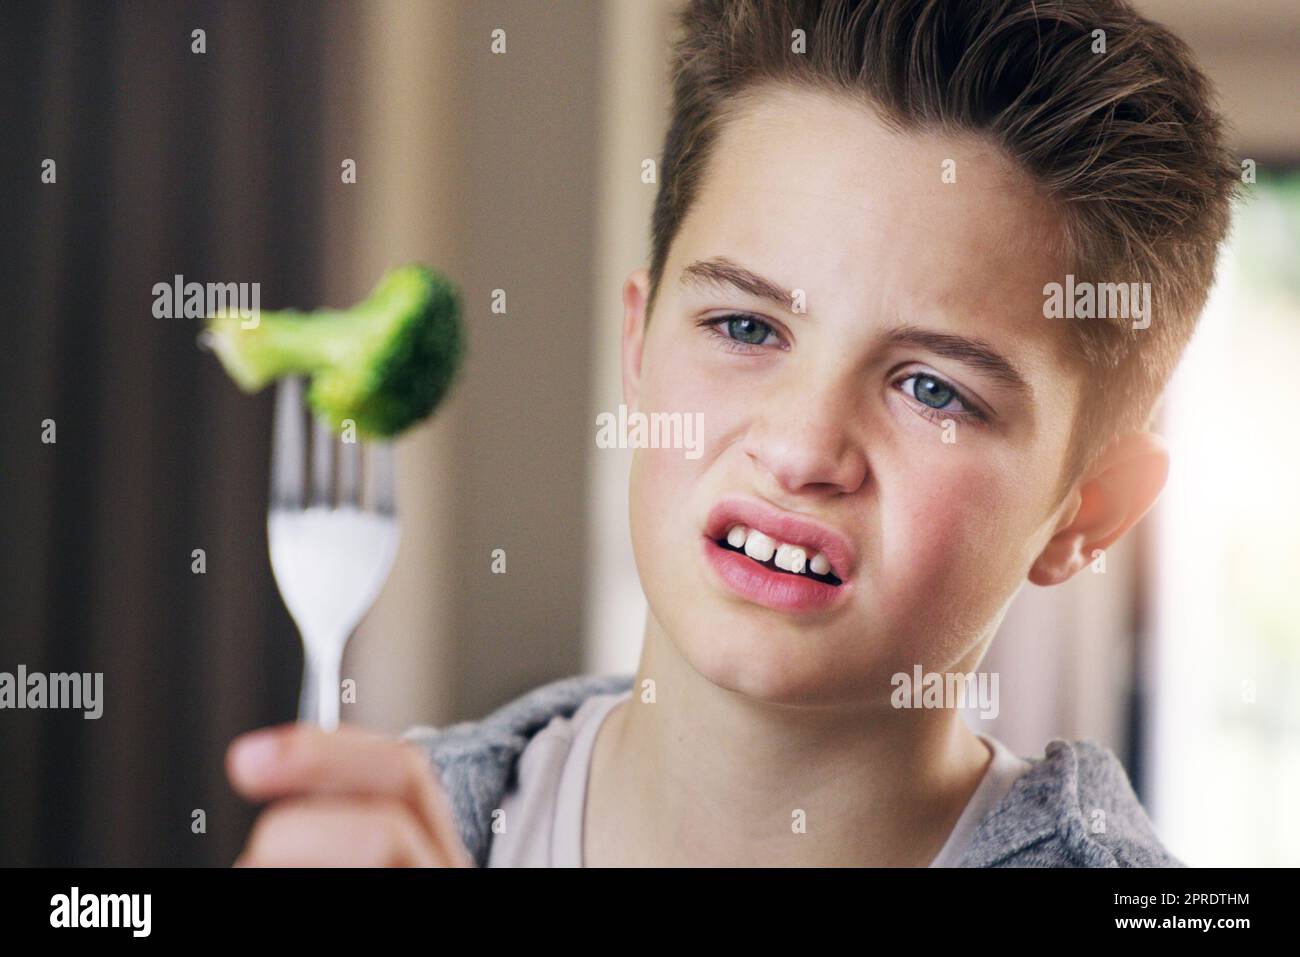 Ein kleiner Junge, der sich weigert, zu Hause seinen Brokkoli zu essen. Stockfoto